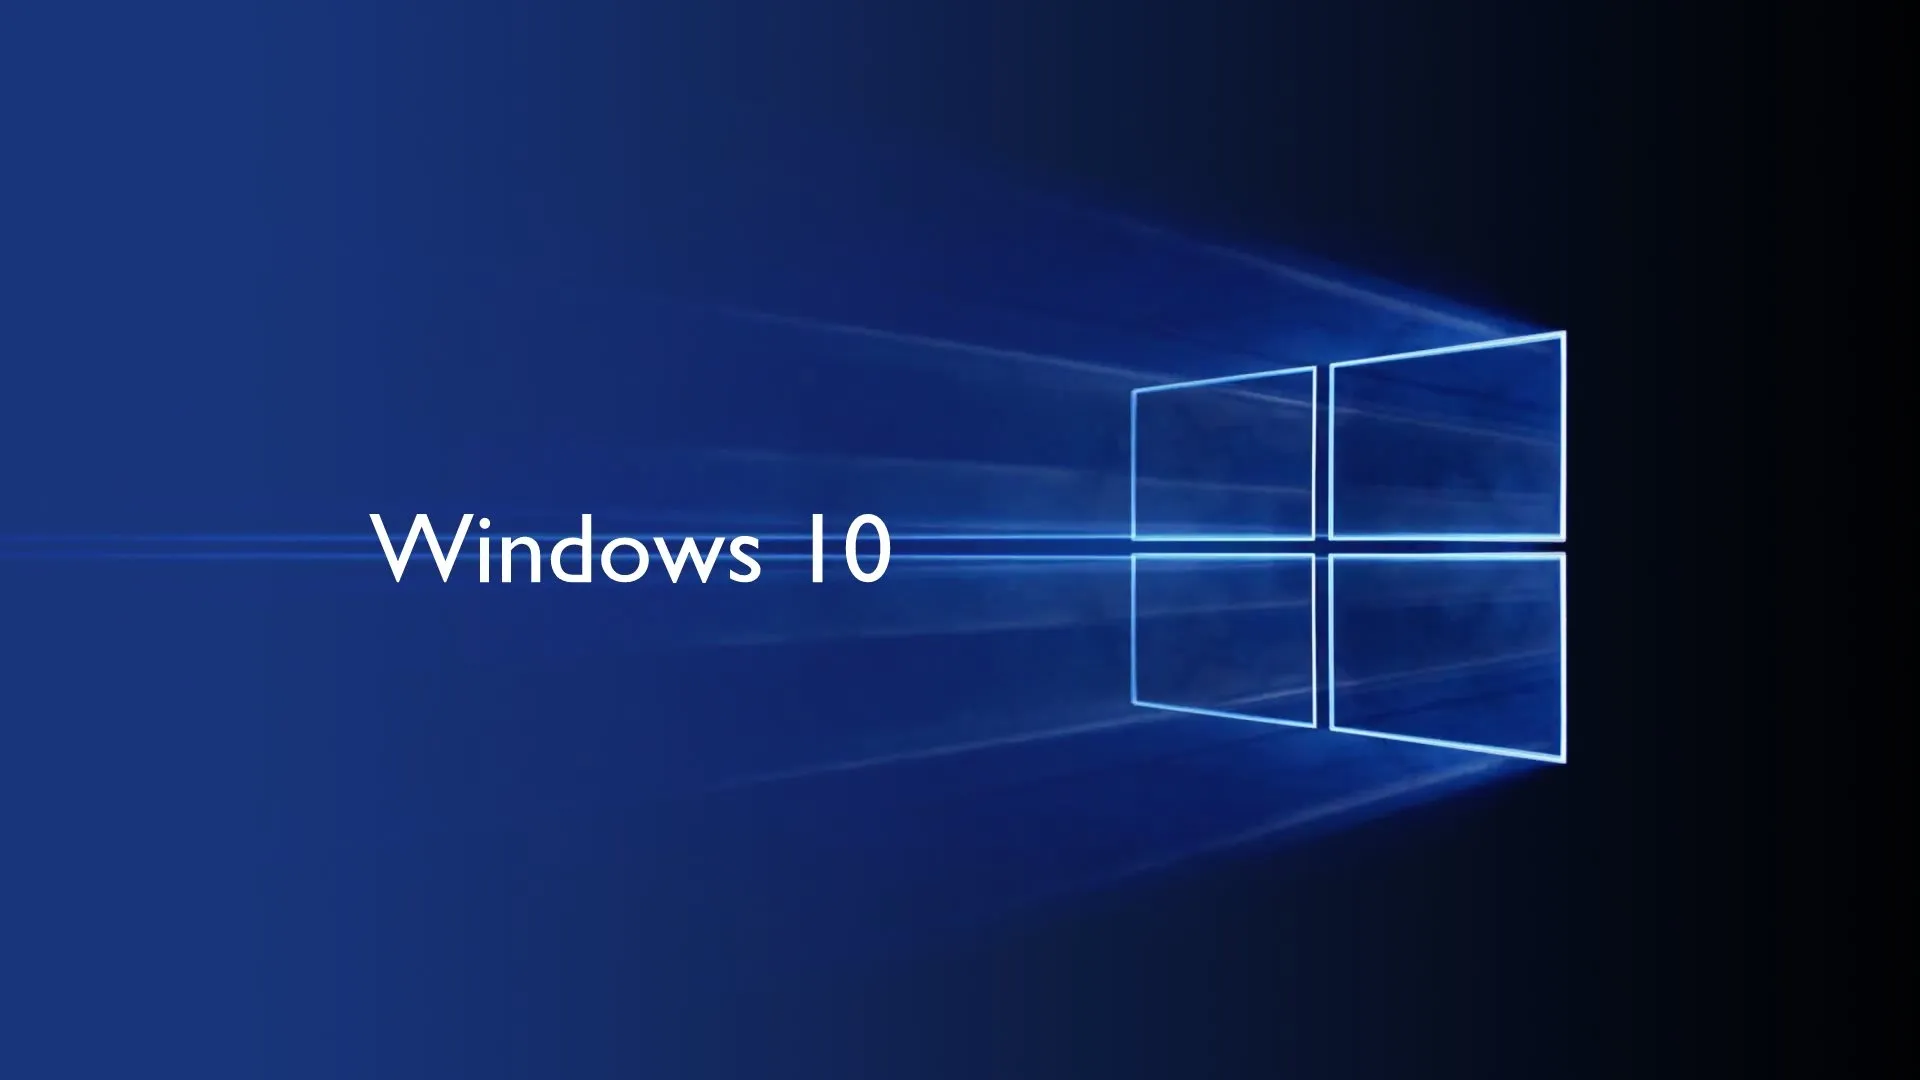 Microsoft Windows 10 Home: Почему стоит приобрести официальную лицензию